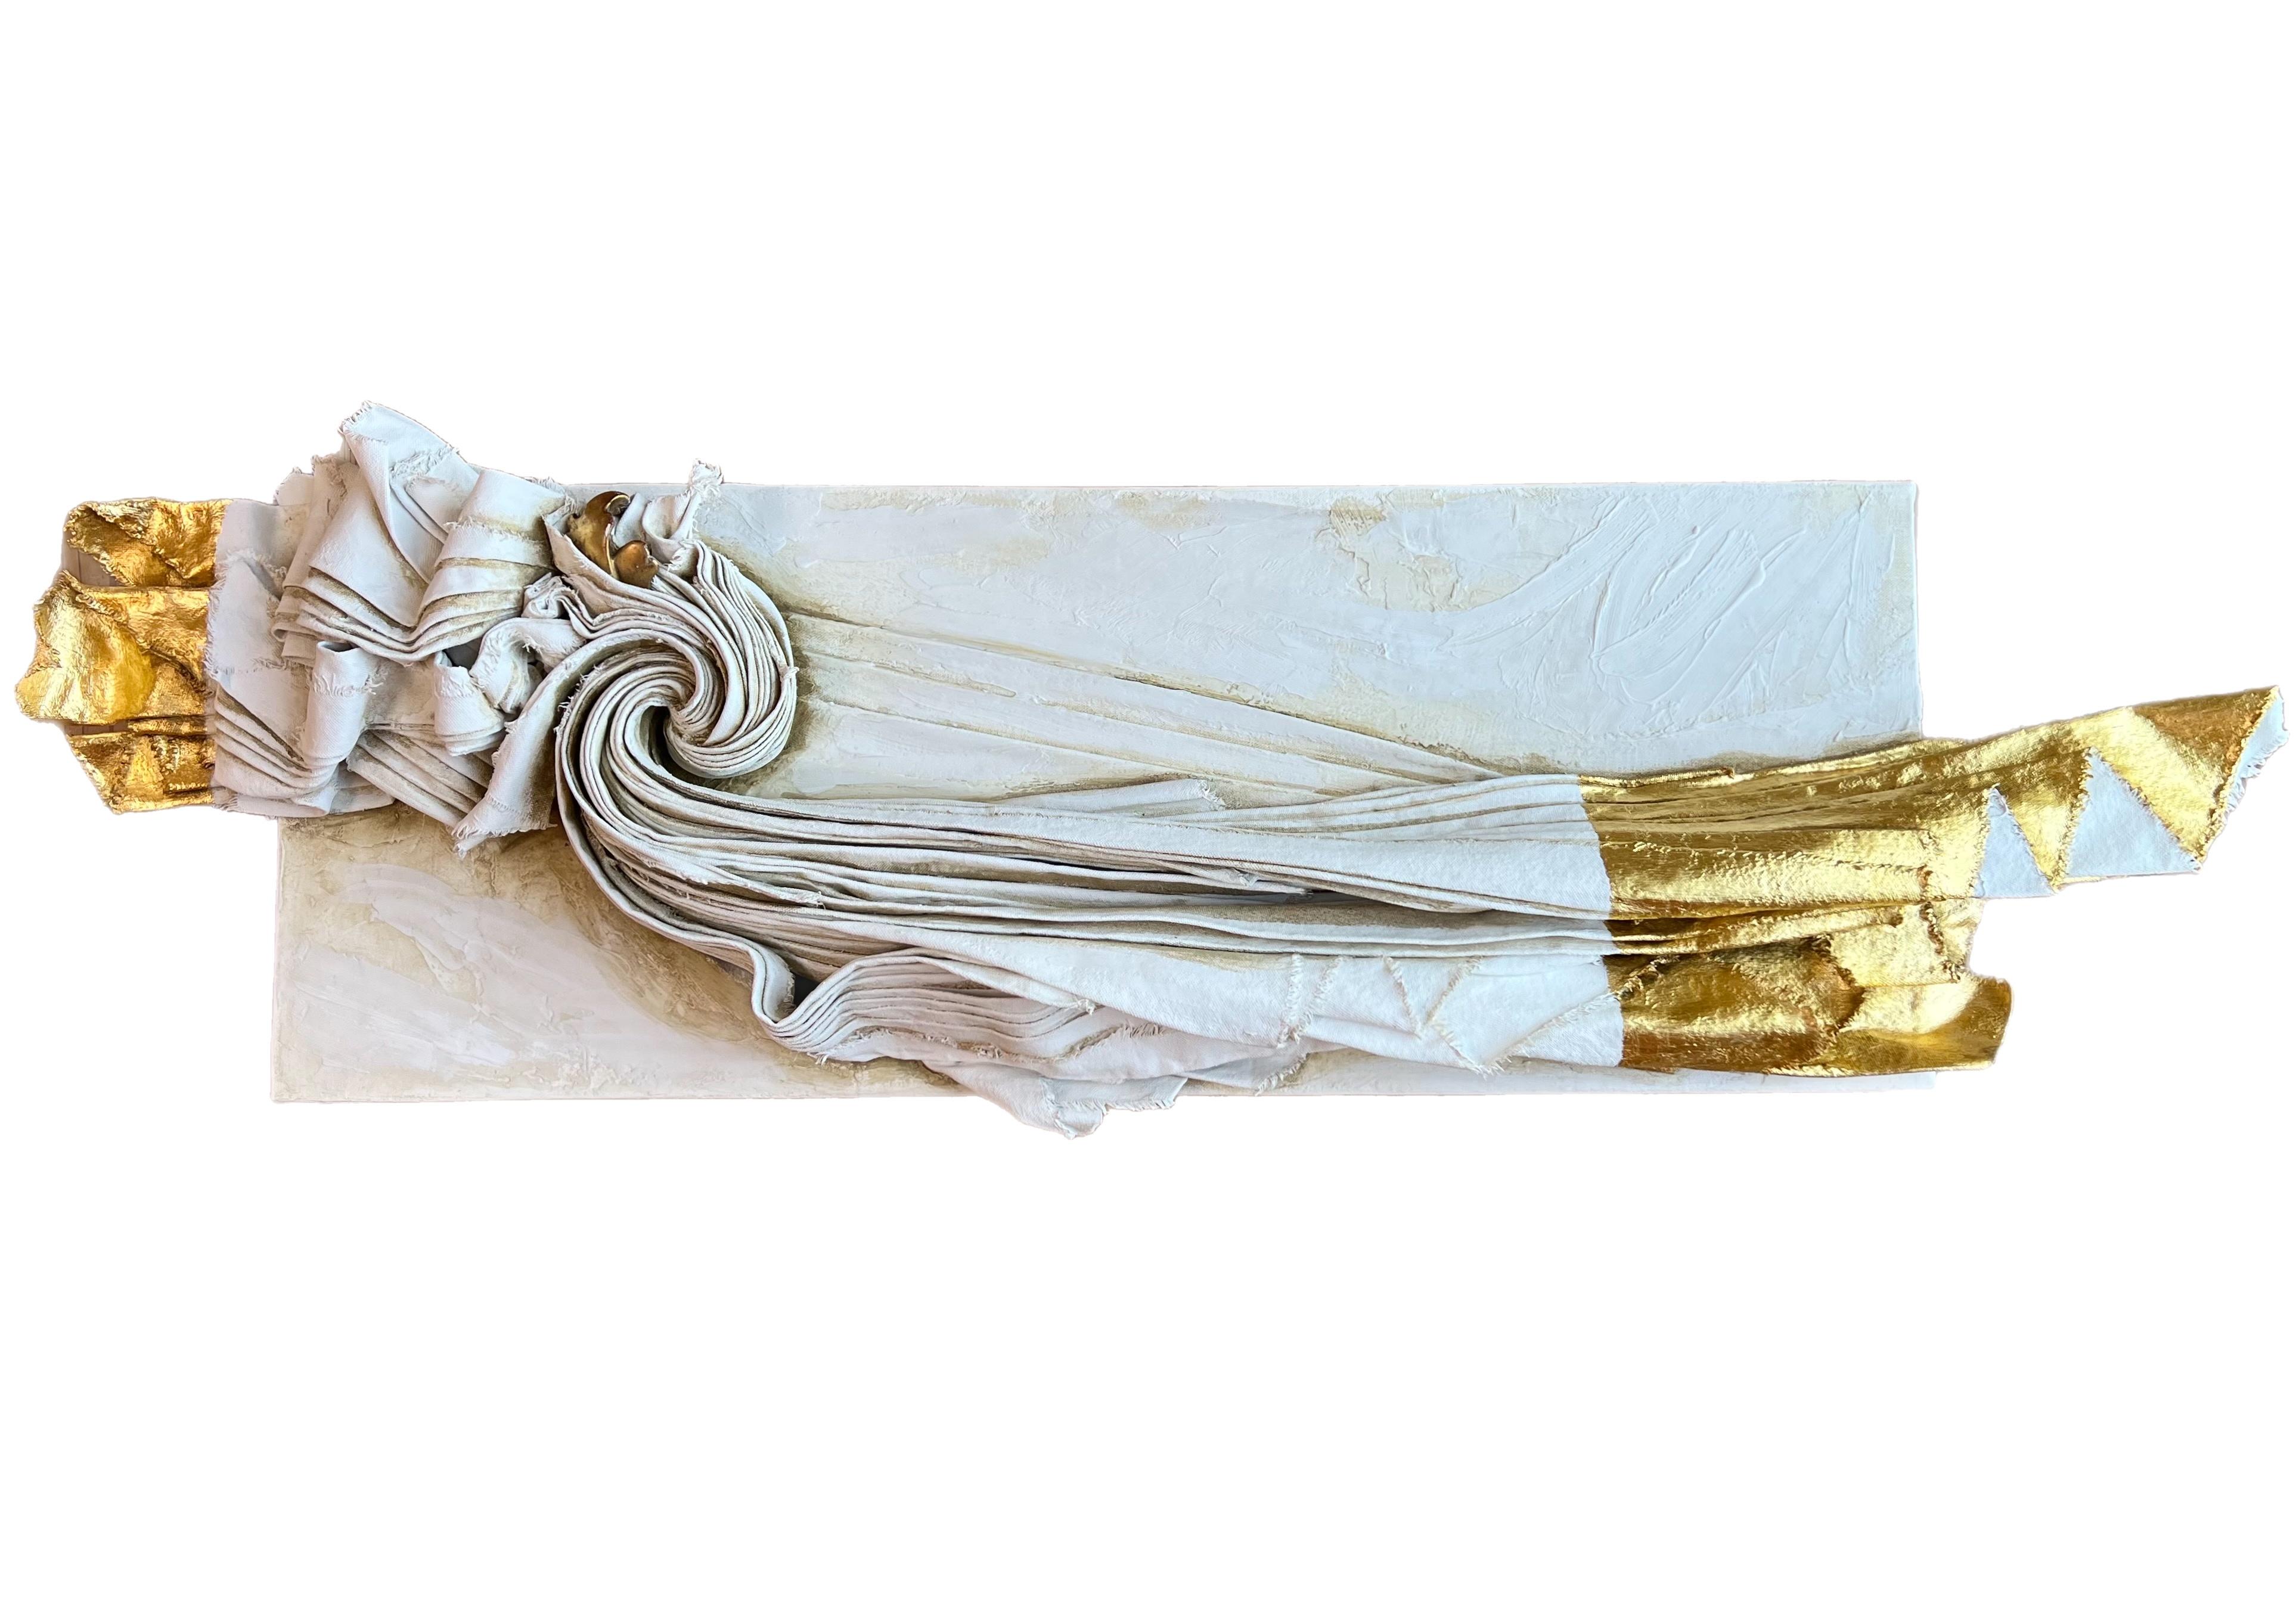 Toile sculpturale avec un fragment de bois doré italien du XVIIe siècle et feuille d'or 24k.

La toile sculptée est moulée avec du gesso, de la cire à dorer, de la pâte à marbre, de la terre verte, de l'ocre foncé italien et de la cendre sur